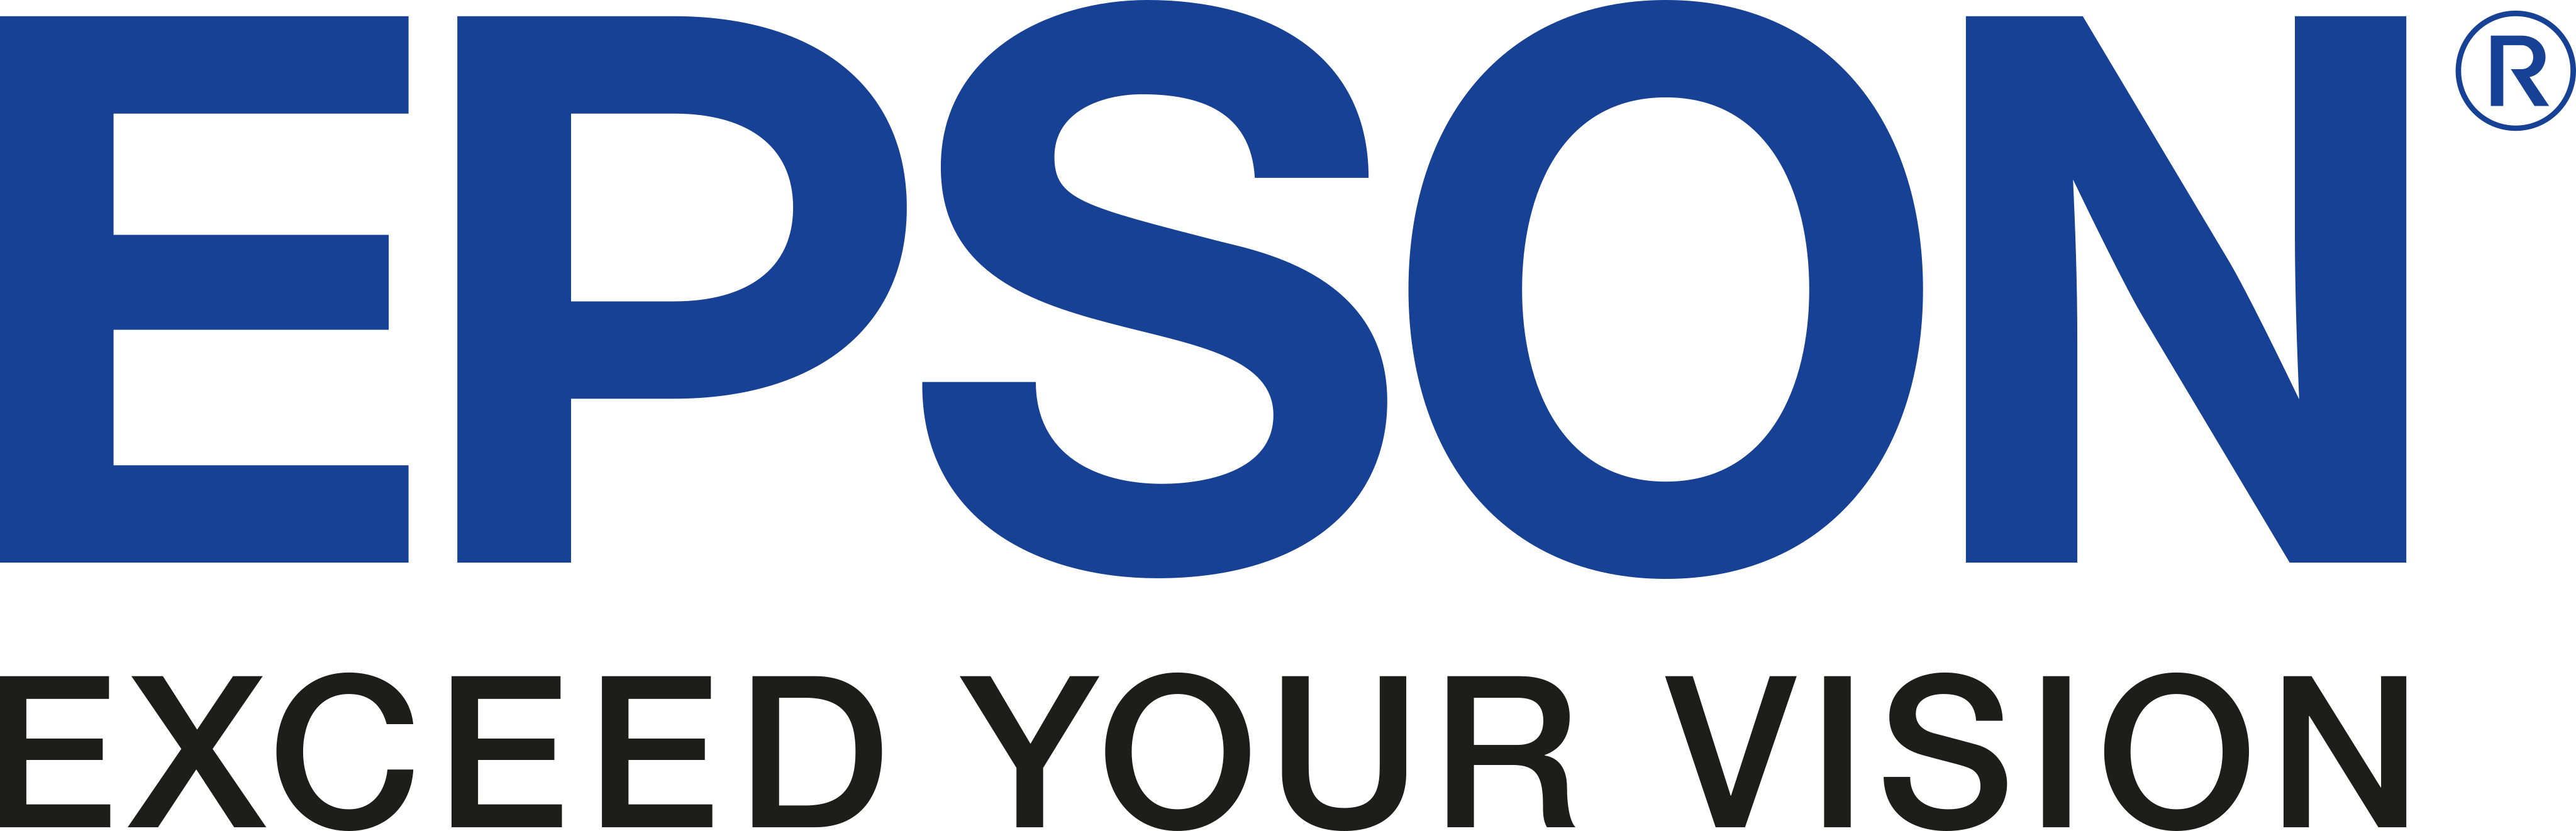 Epson-logo-5